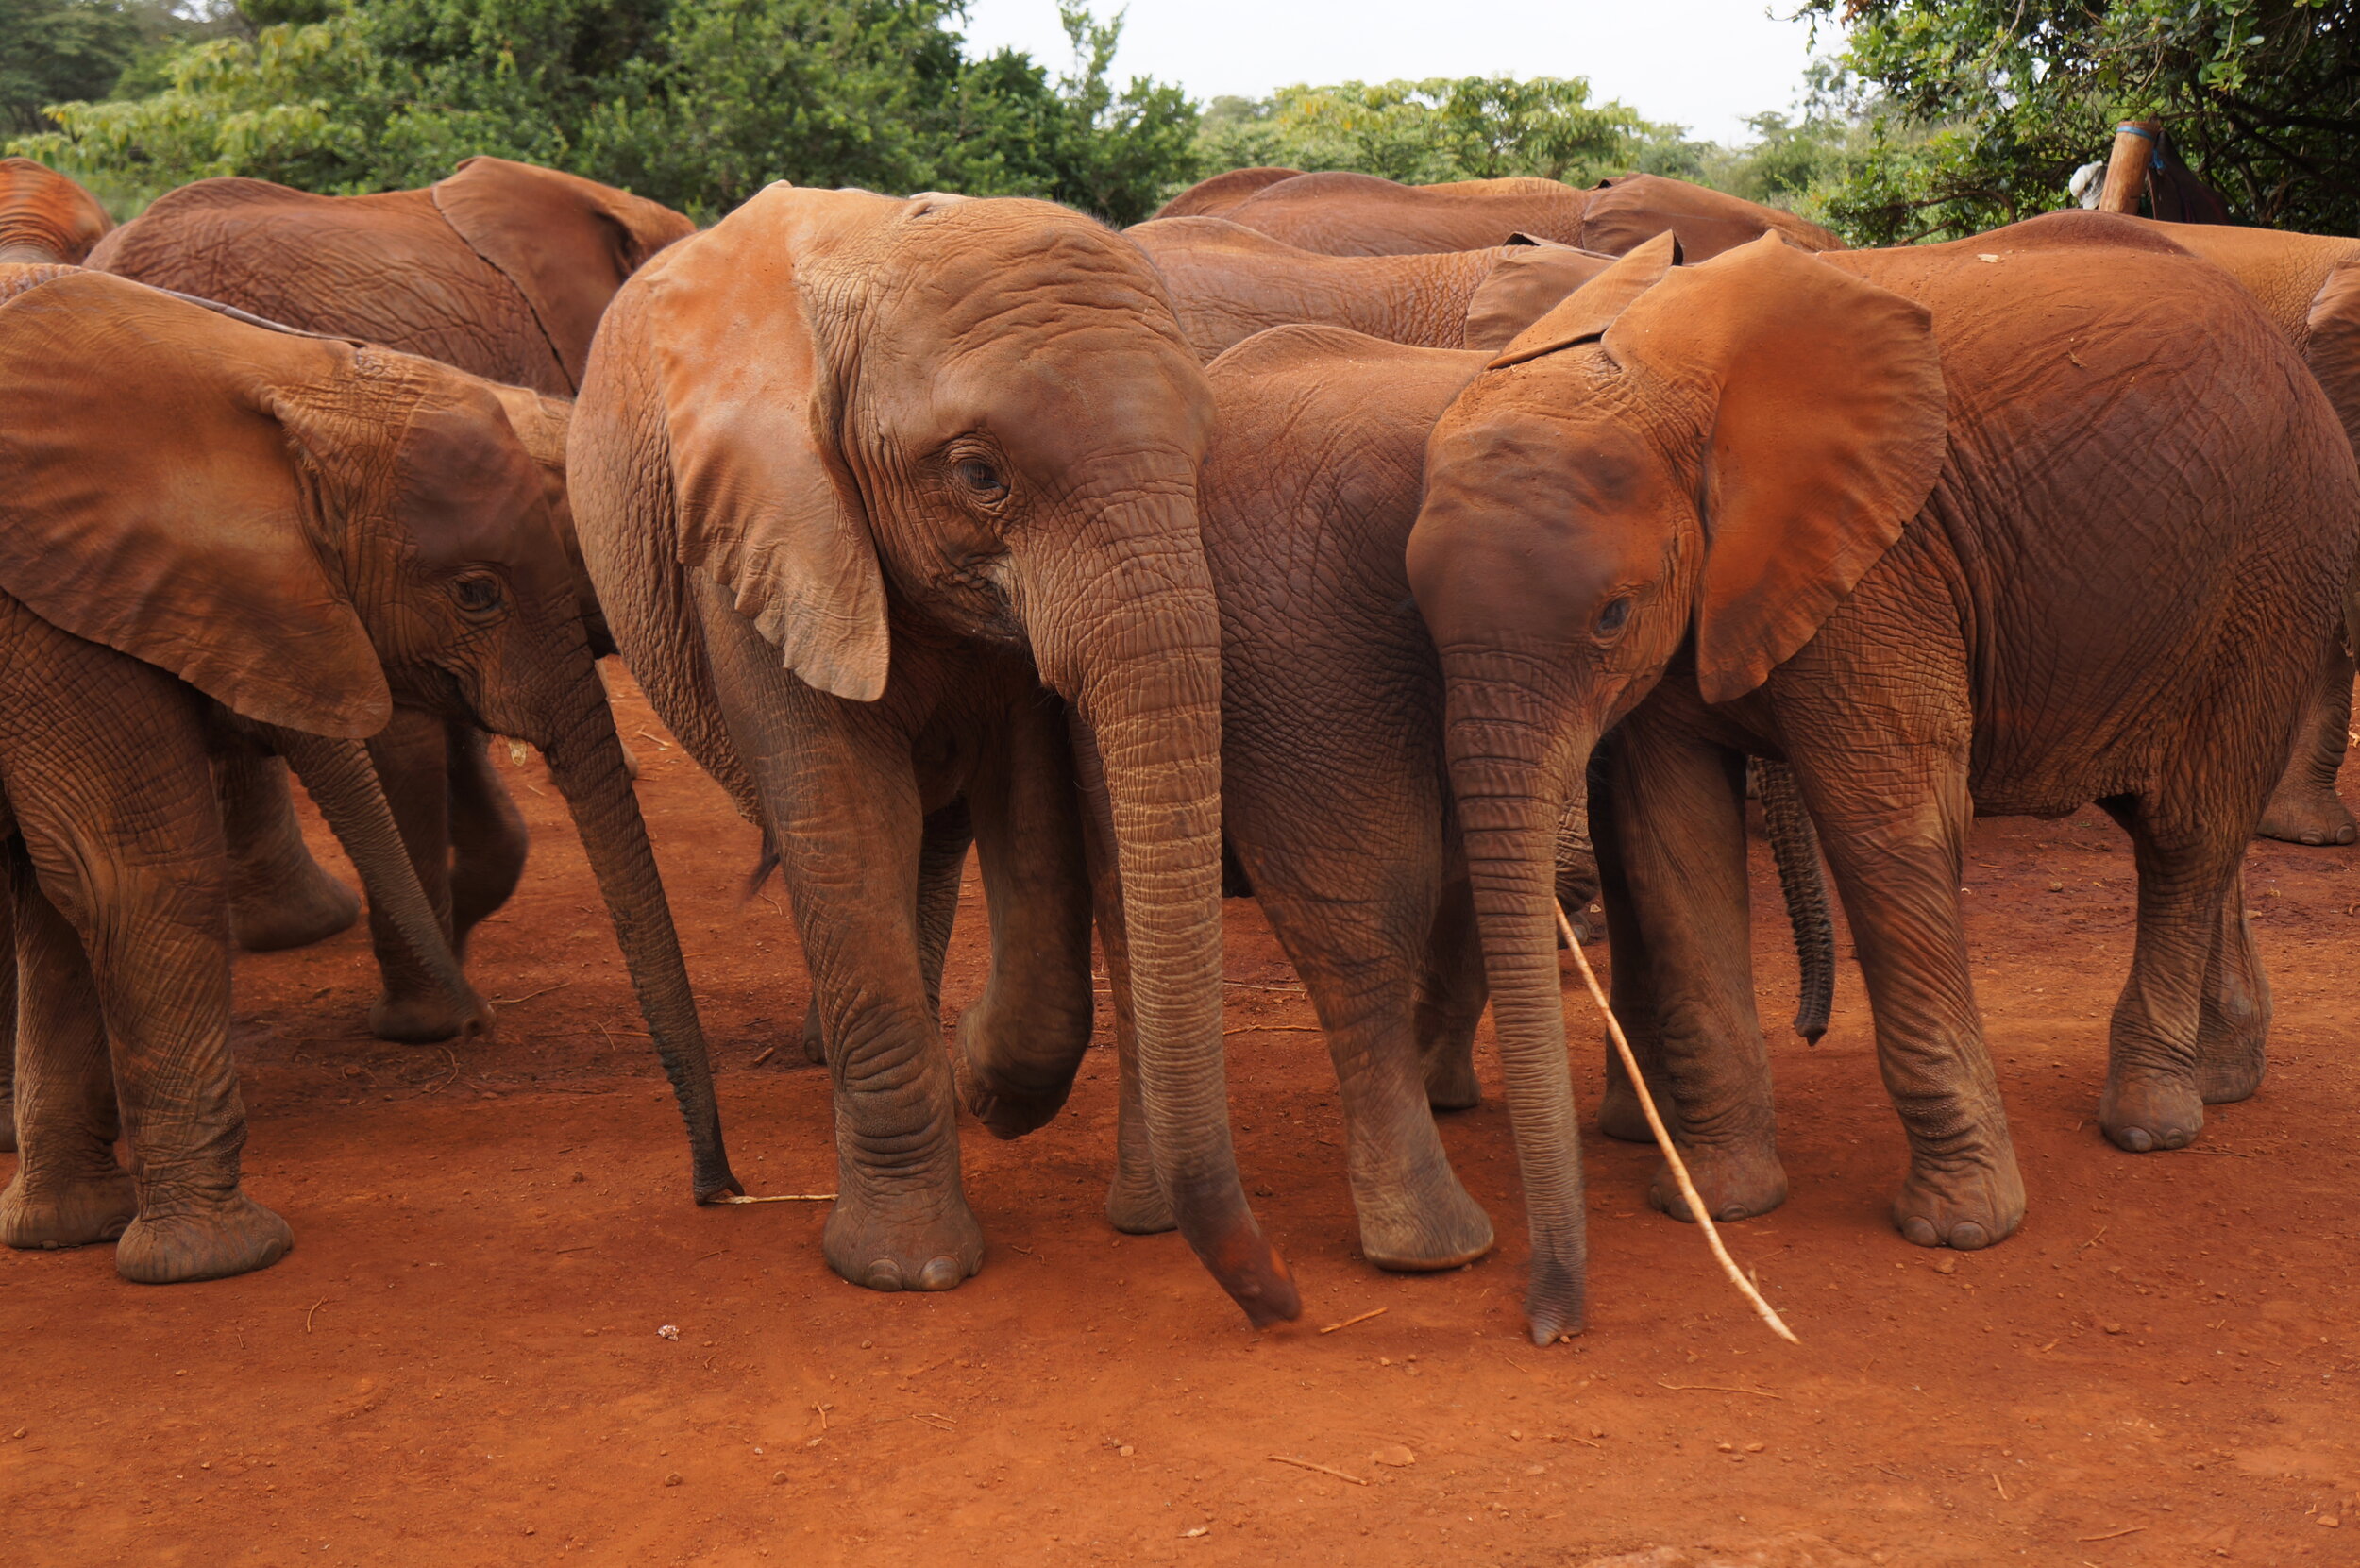 Elephants_orphanage-nairobi-kenya_Tett-Safaris.jpg